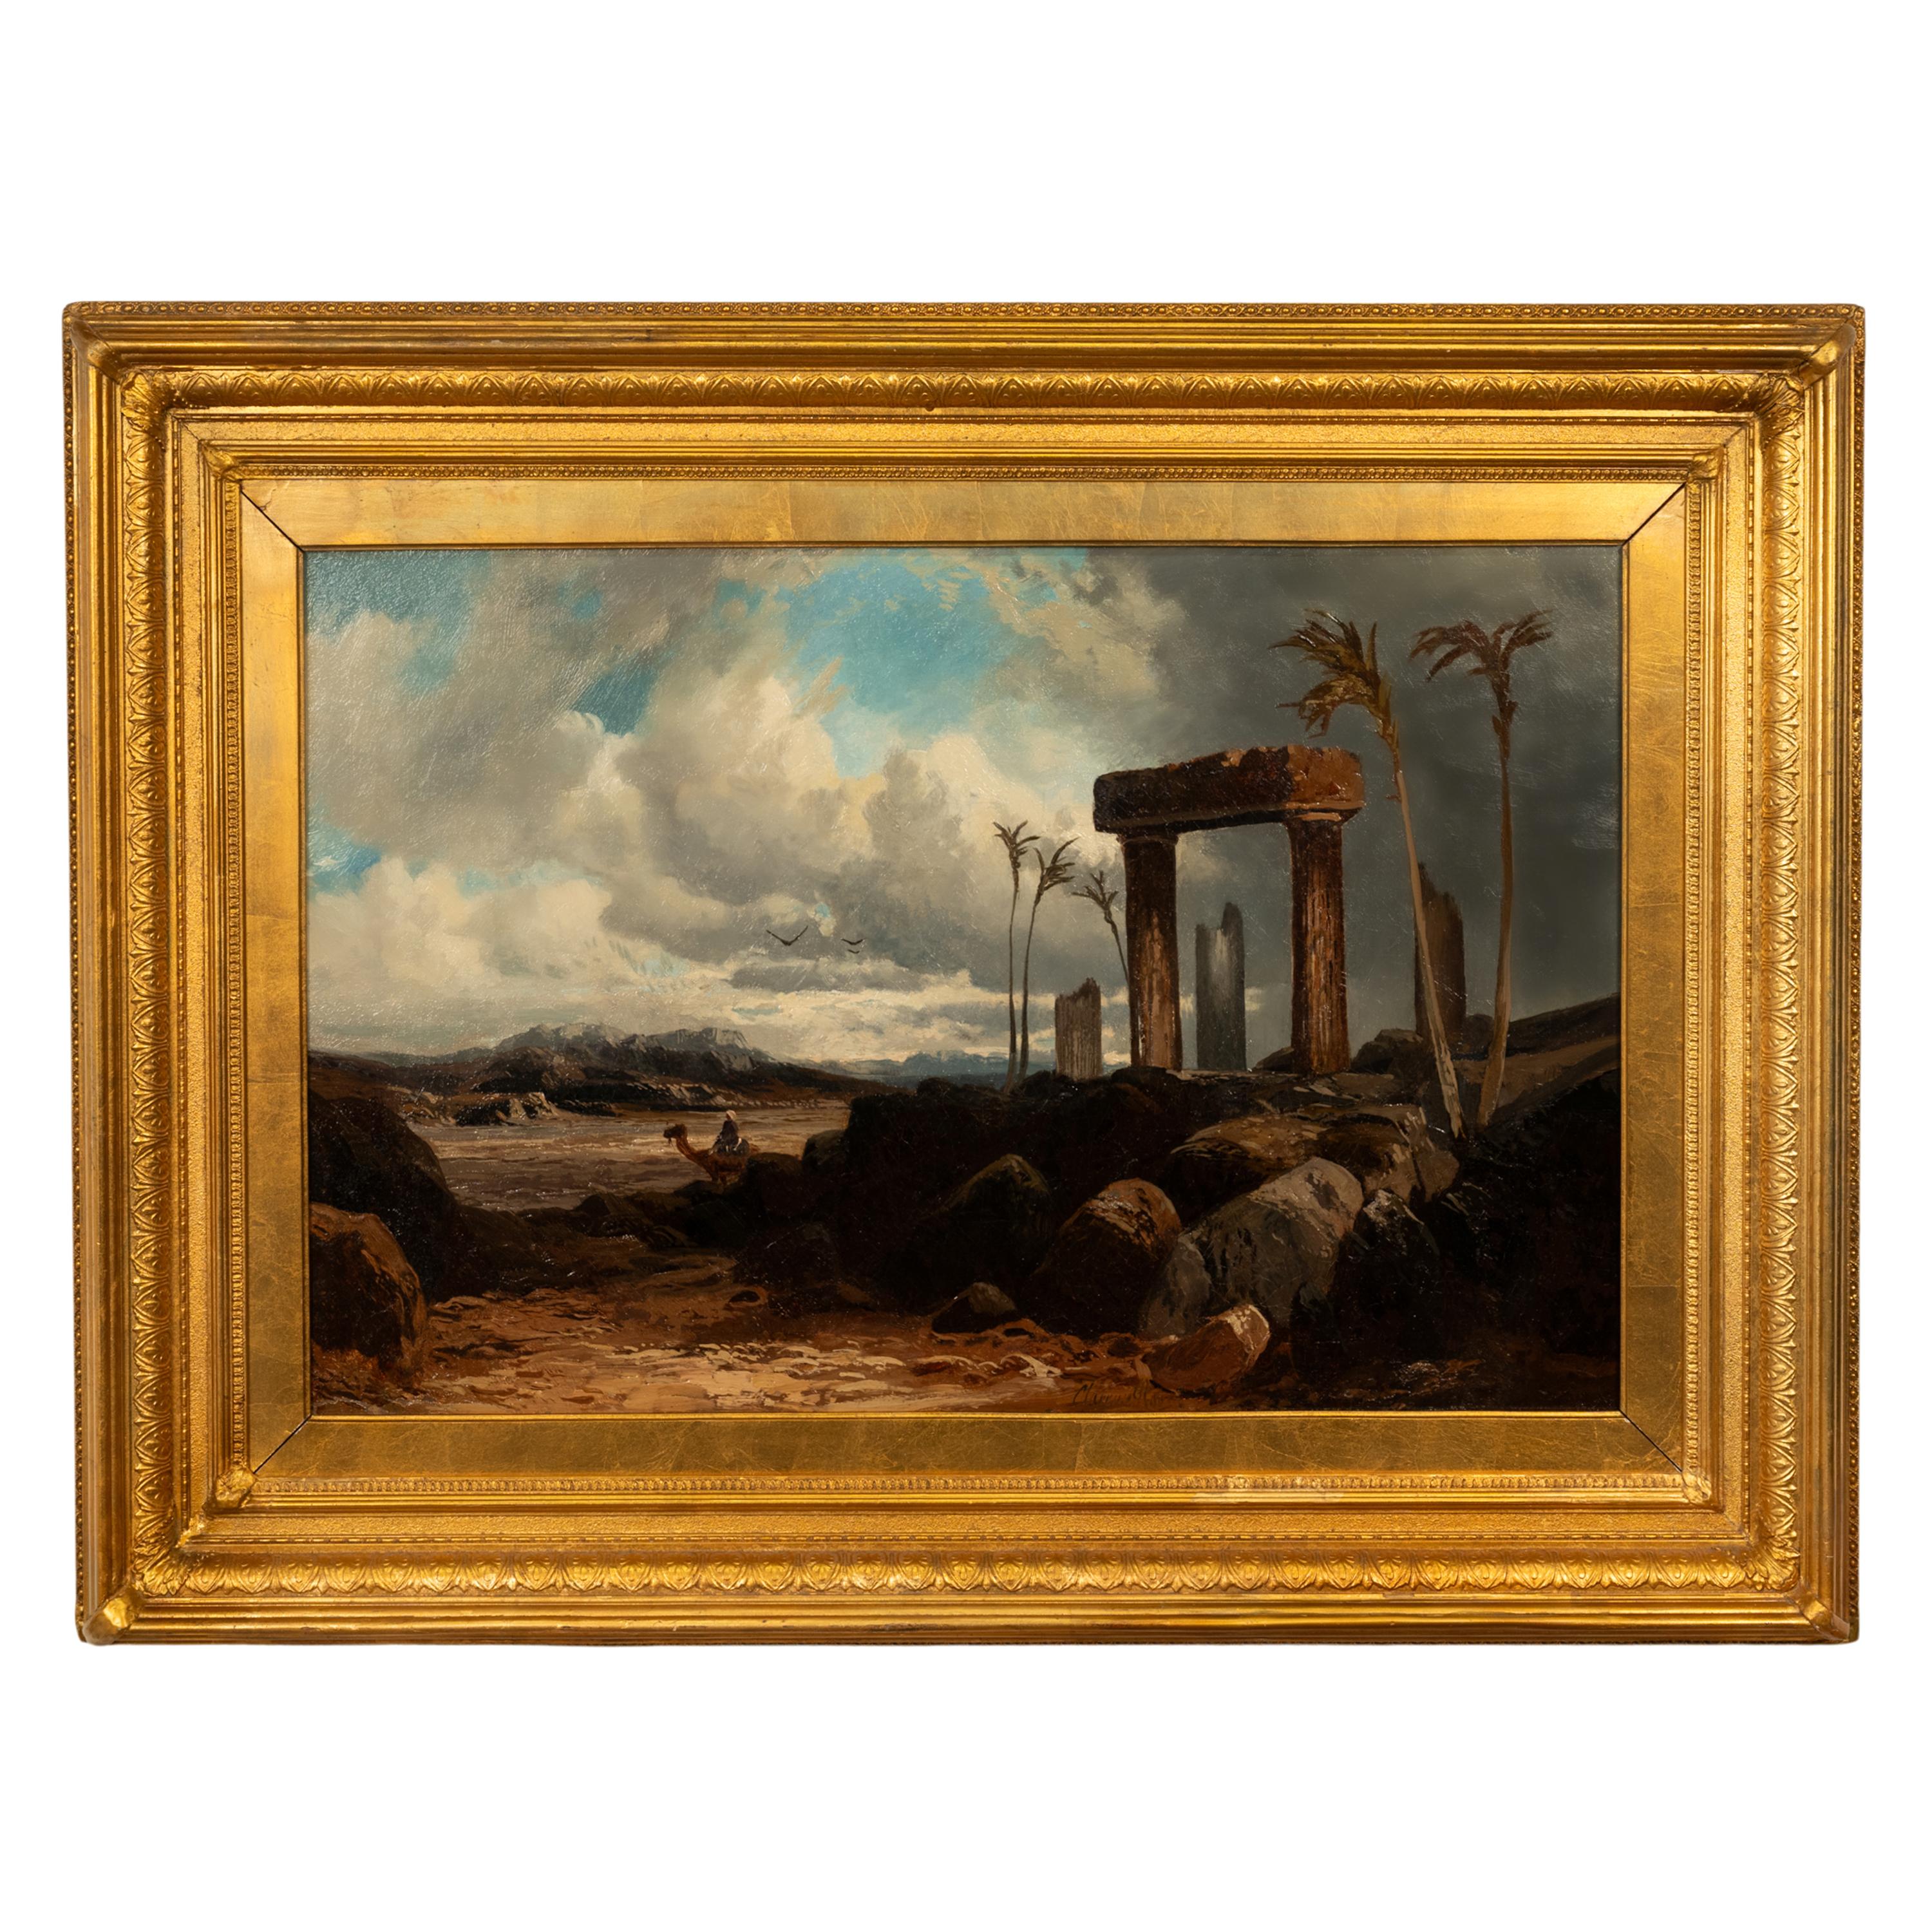 Clarence Rowe Landscape Painting – Antikes Ölgemälde auf Leinwand, 19. Jahrhundert, großes orientalisches Palmyra Syrien, 1880, Öl auf Leinwand